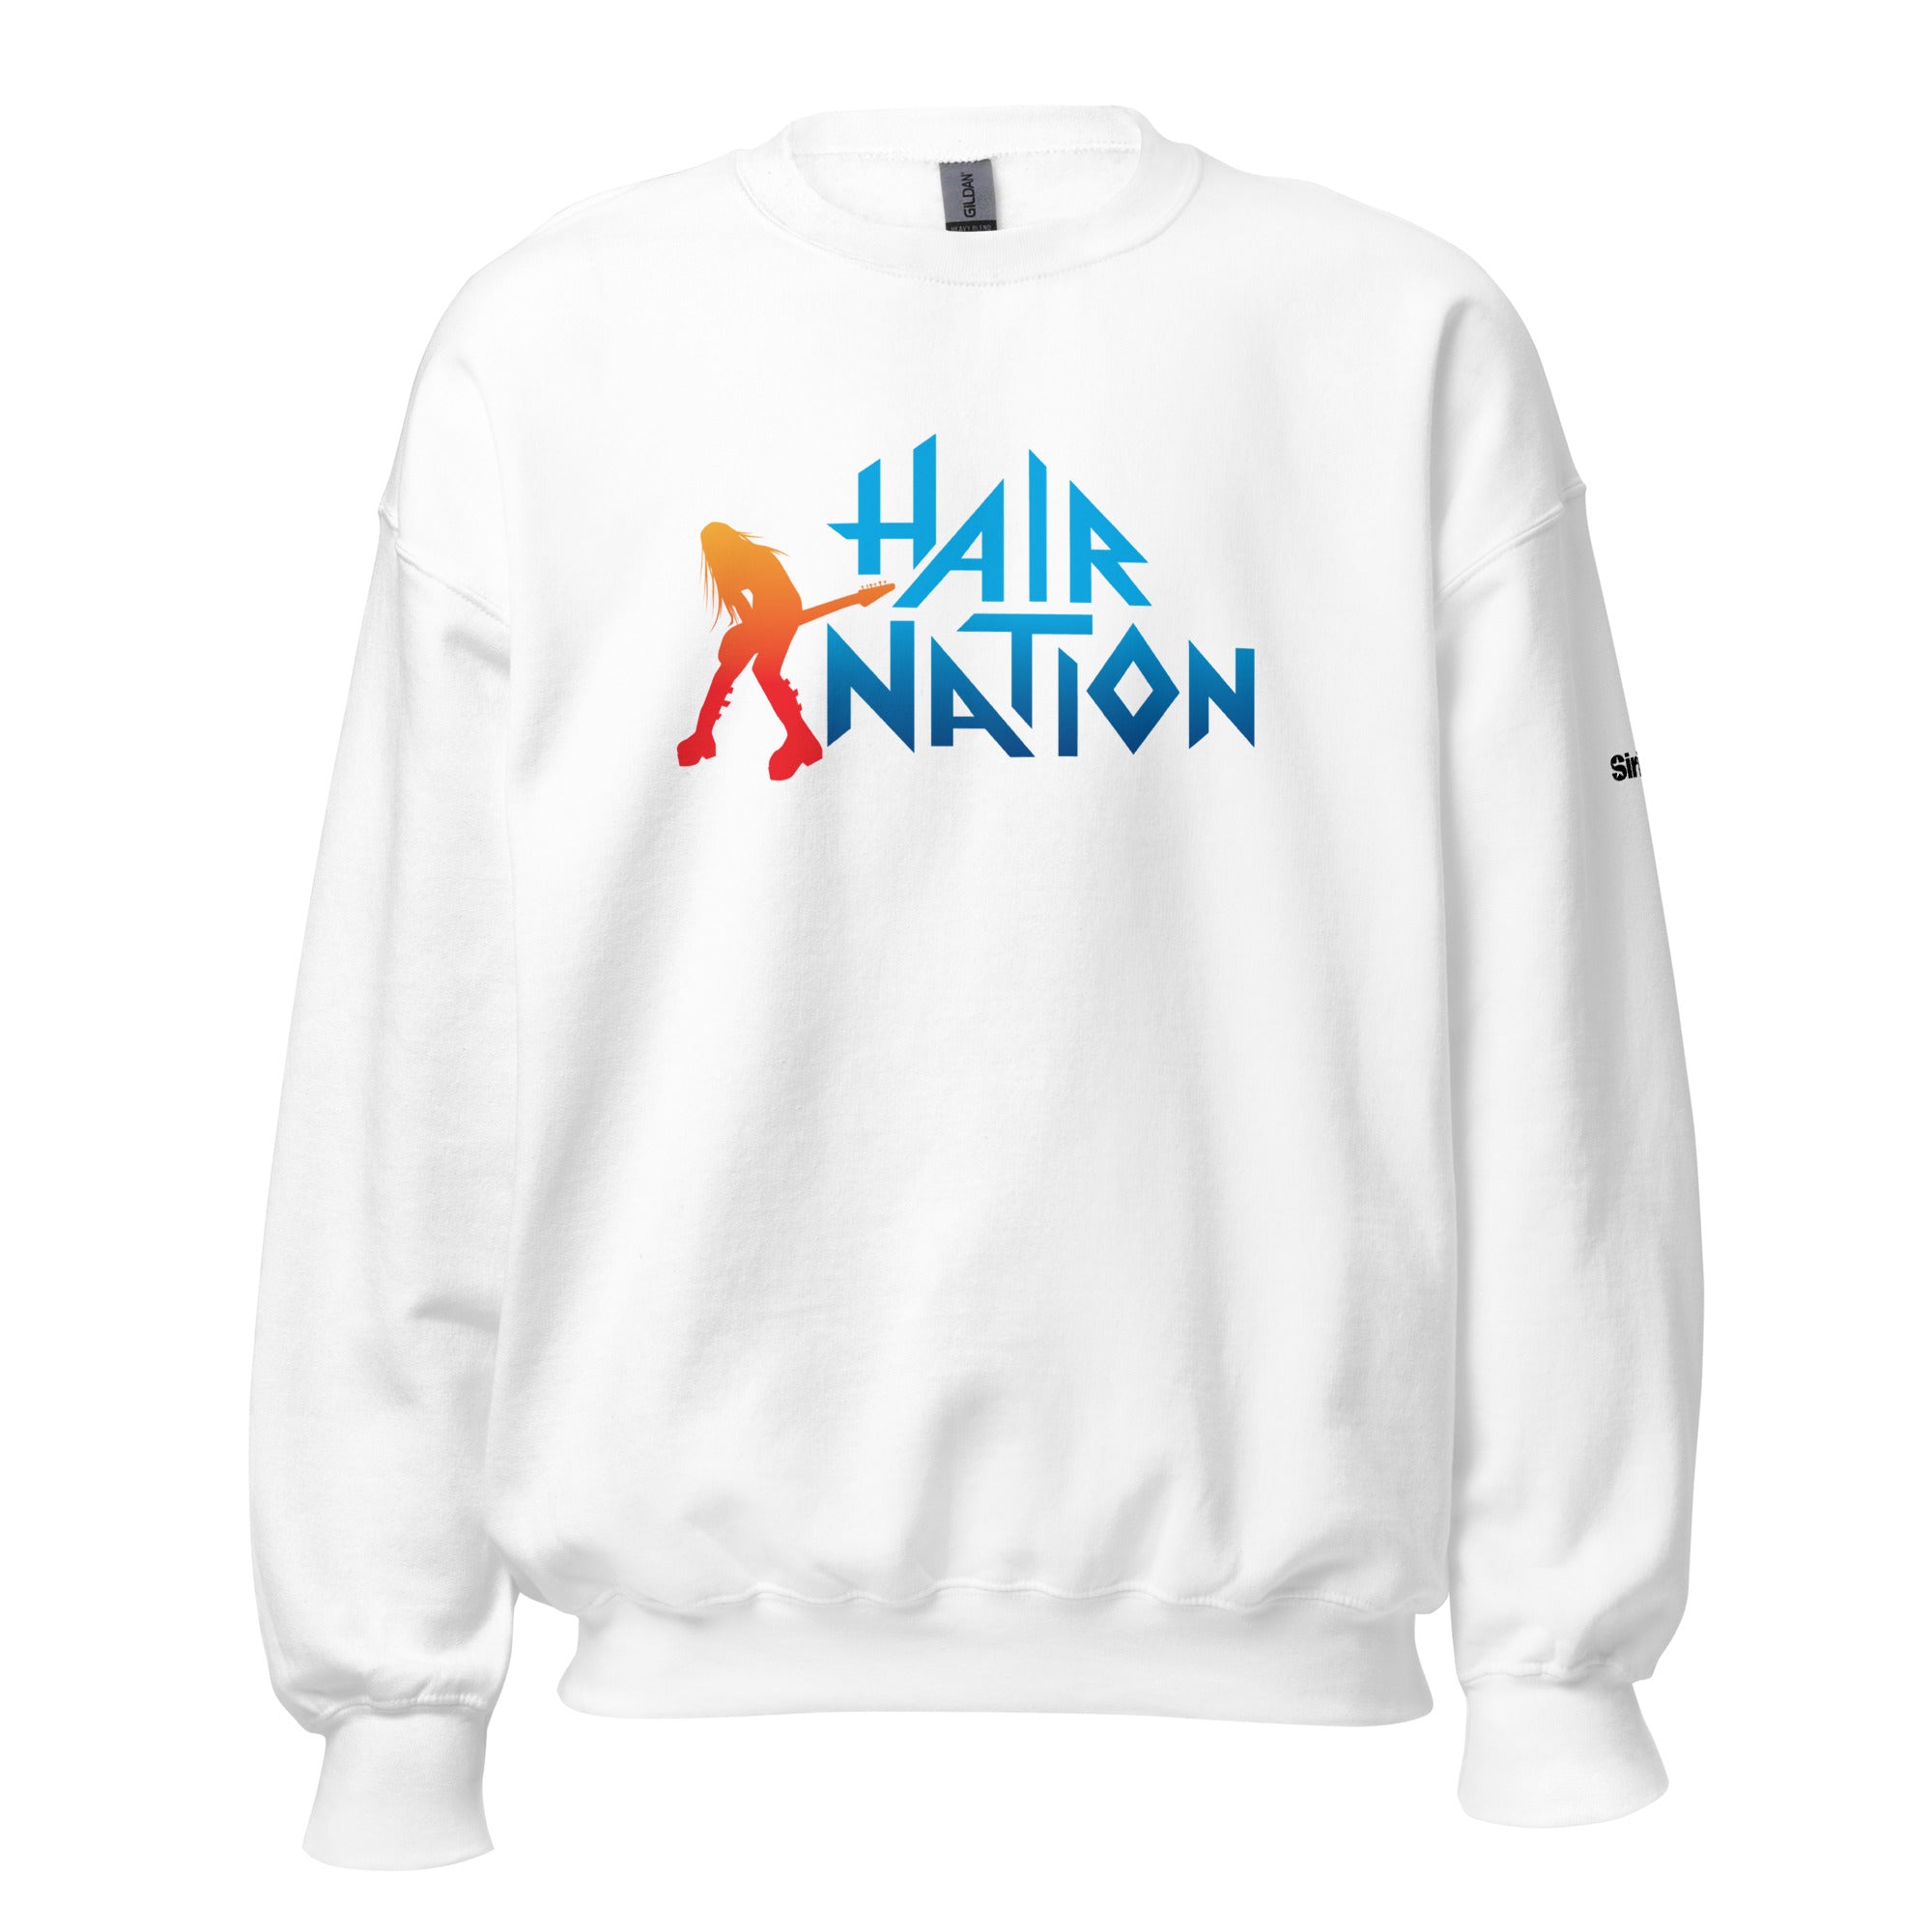 Hair Nation: Sweatshirt (White)